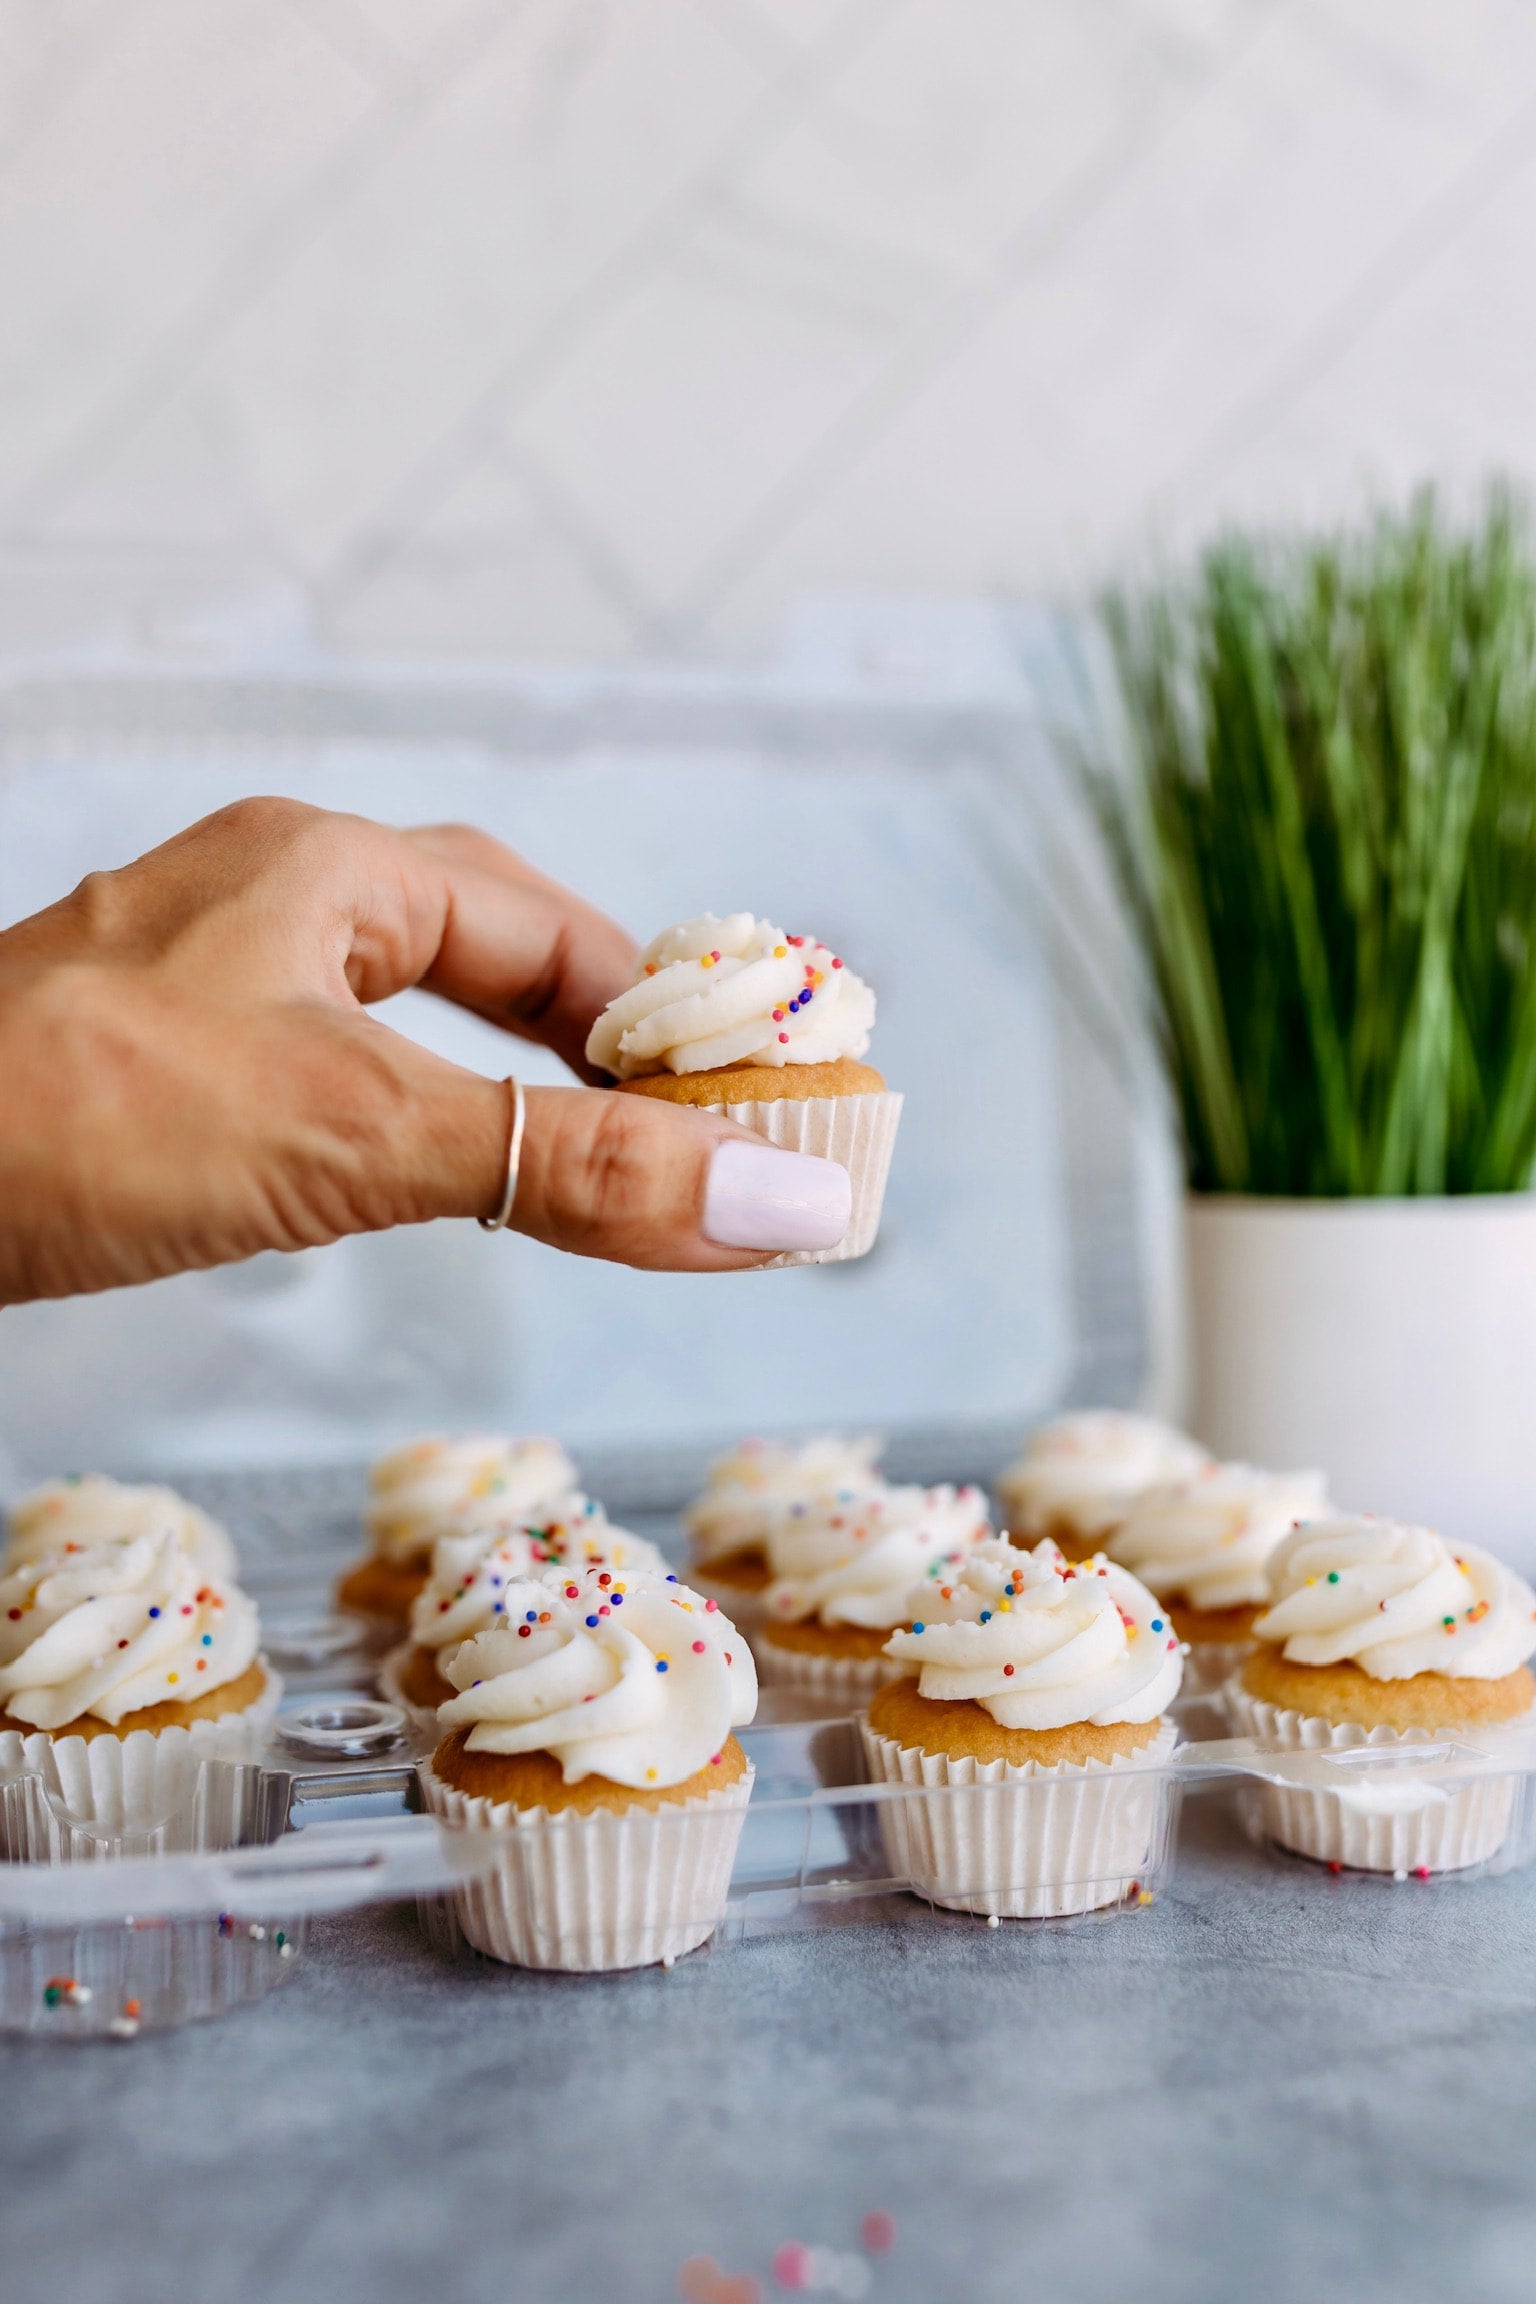 Cupcakes - Hapa Cupcakes & Bakery - Orange County, CA | Hapa Cakes & Bakery